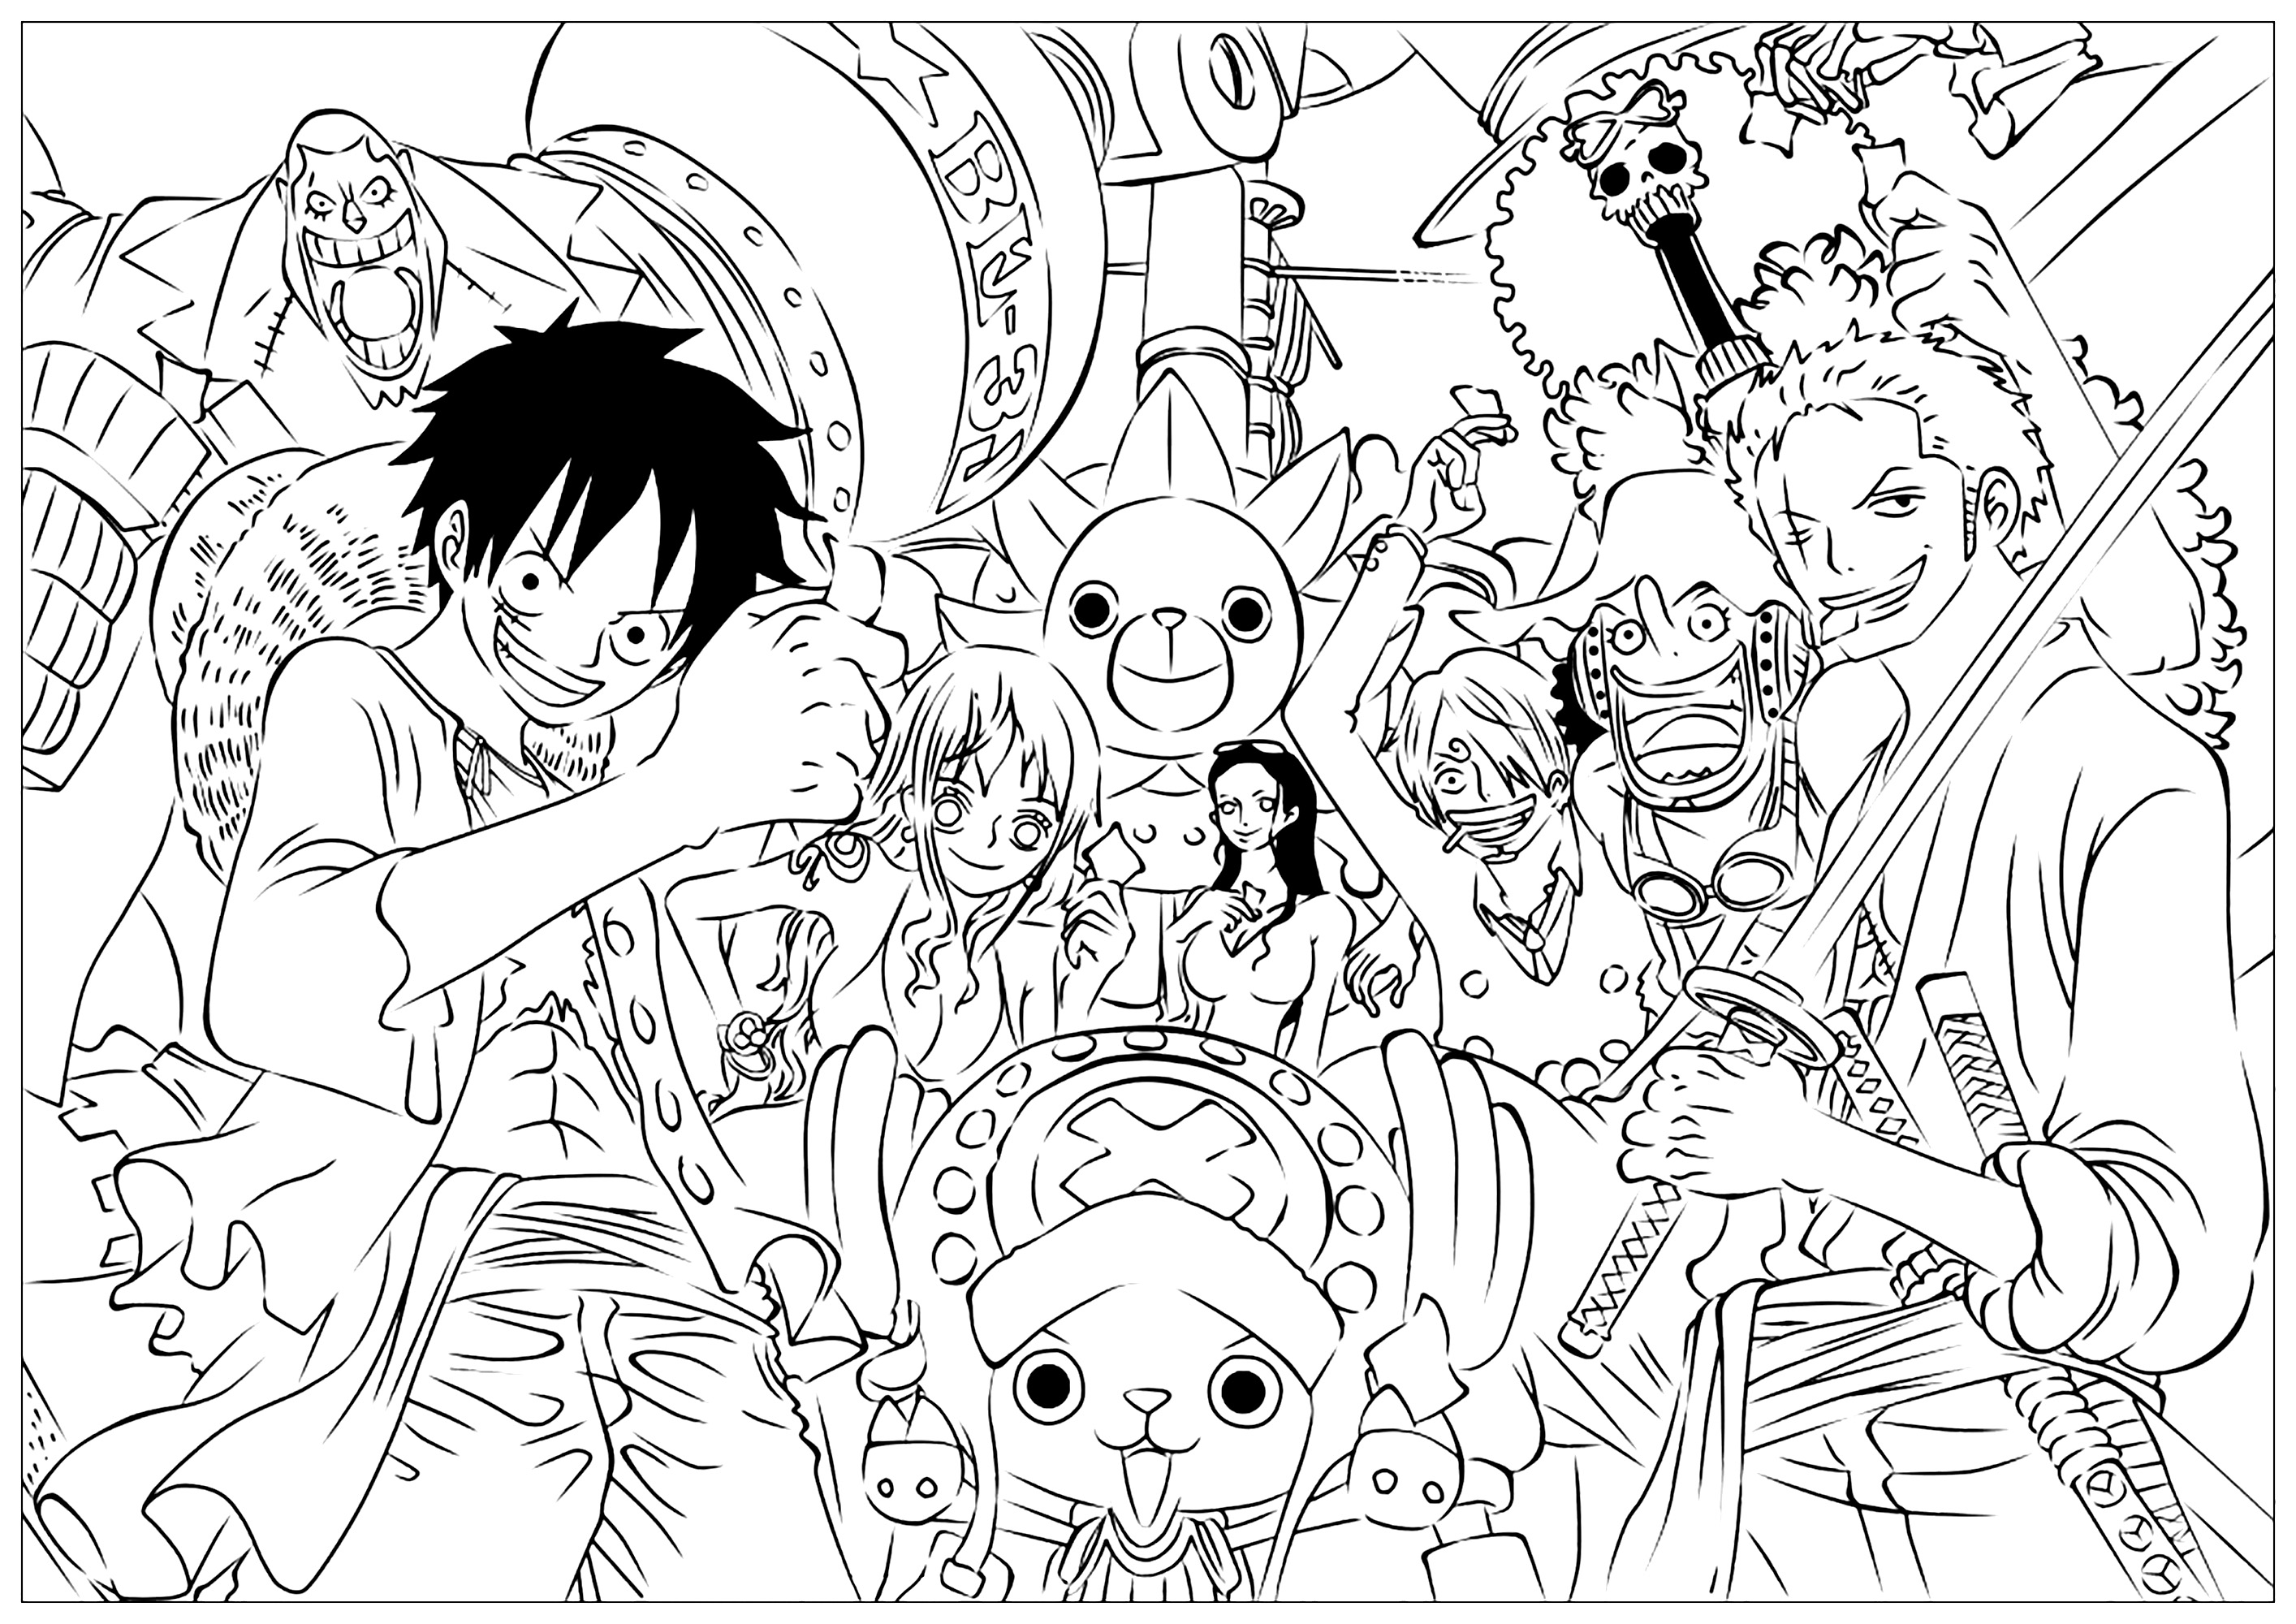 Personajes de una pieza en un libro para colorear lleno de detalles. Estos son los principales personajes de One Piece: Monkey D. Luffy es el líder que quiere convertirse en Rey de los Piratas. Roronoa Zoro es un espadachín de tres hojas; Nami, la navegante; Usopp, el francotirador y cuentacuentos; Sanji, el cocinero; Tony Chopper, el médico reno; Nico Robin, el arqueólogo; Franky, el carpintero cyborg; Brook, el músico esqueleto; y Jinbei, el karateka hombre-pez. Todos forman parte de la tripulación de Chapeau de Paille con sueños únicos.